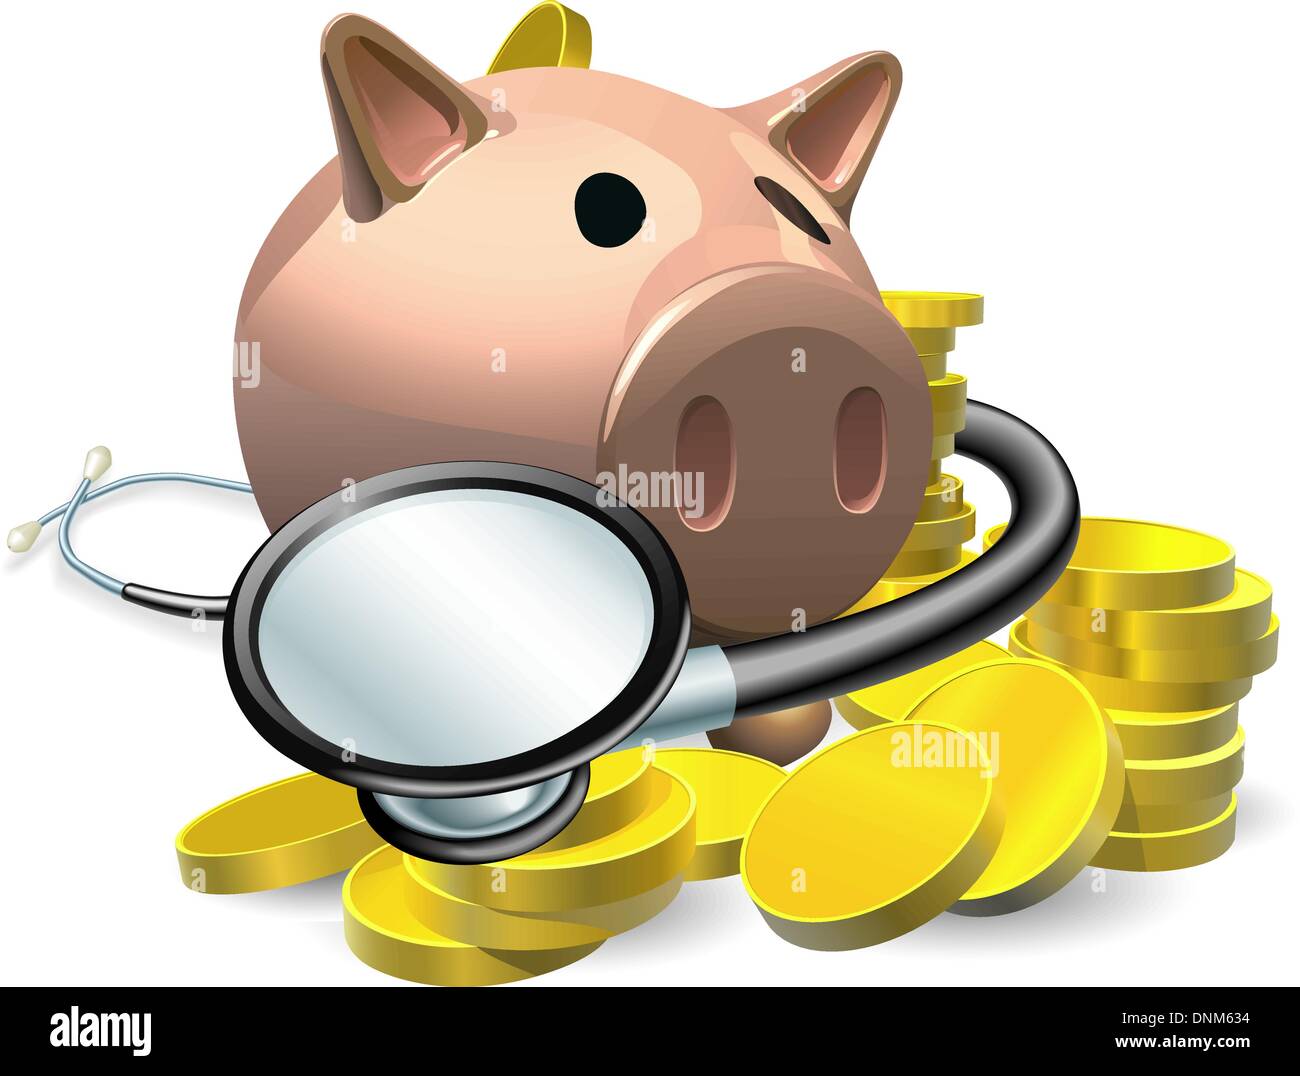 Finanzielle Gesundheit Check Konzept. Ein Sparschwein mit Münzen und Stethoskop verpackt um sie herum. Stock Vektor